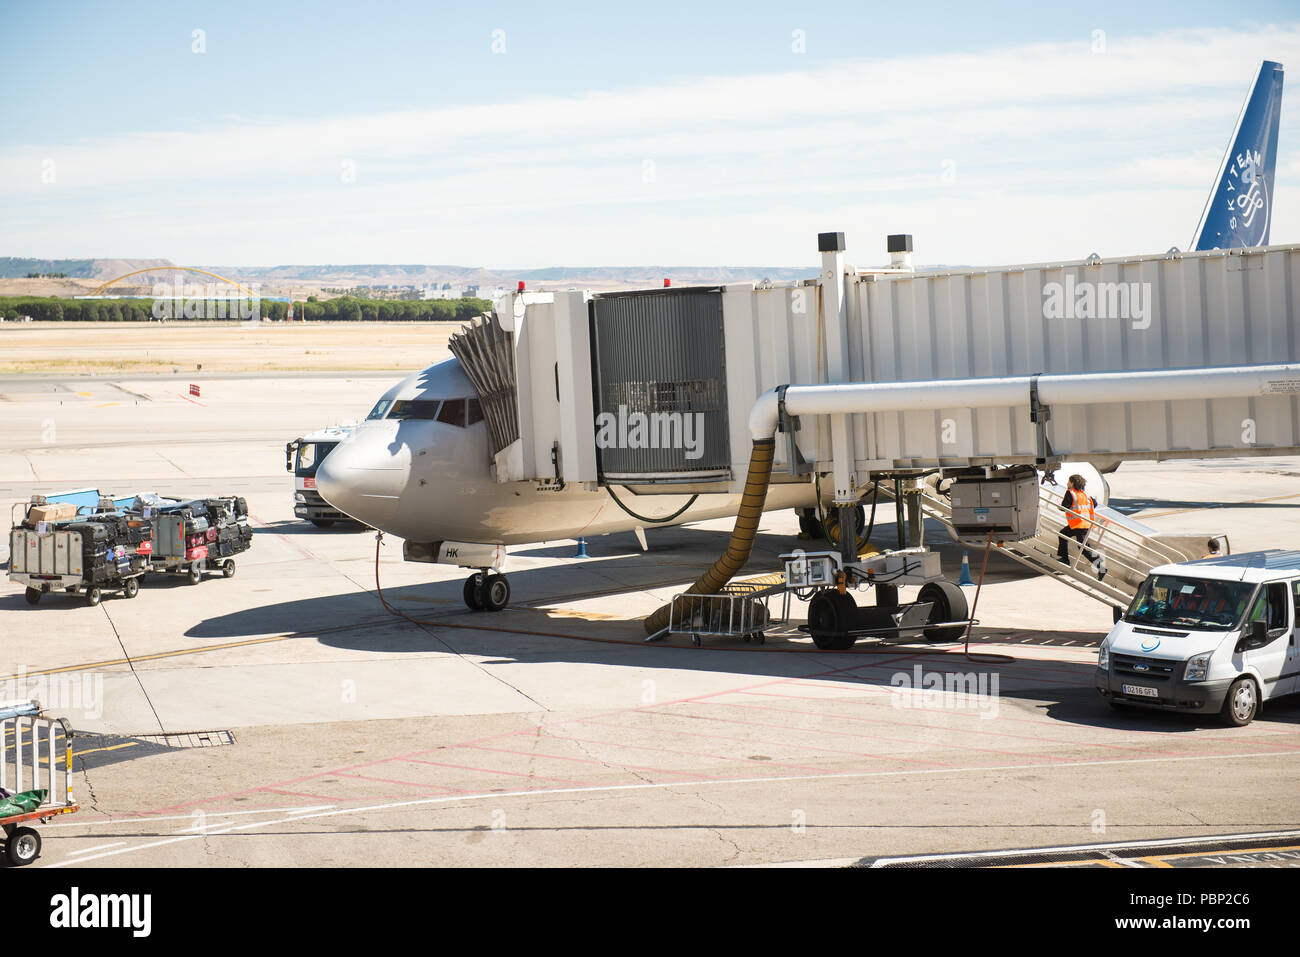 Skyteam in aereo l'aeroporto di Madrid in estate in posizione di parcheggio Foto Stock